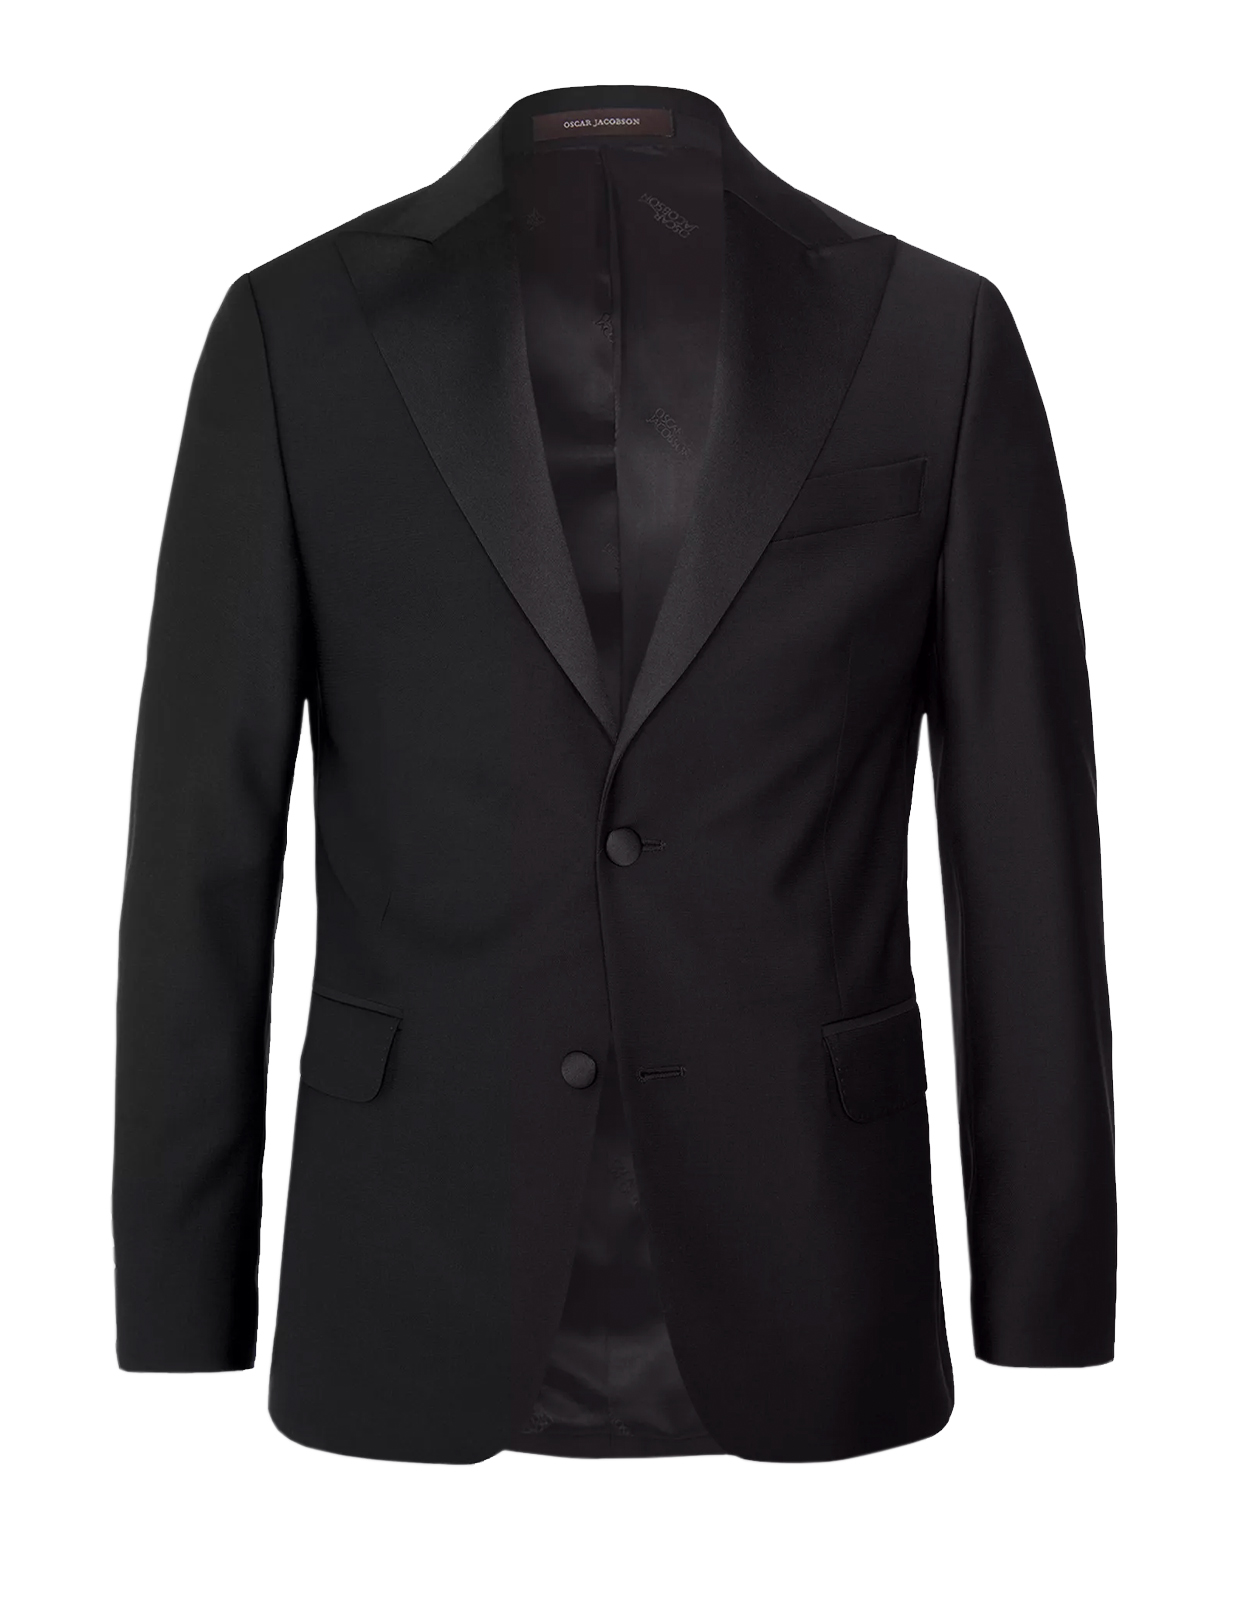 Elder Tuxedo Jacket Mix & Match Black Stl 48